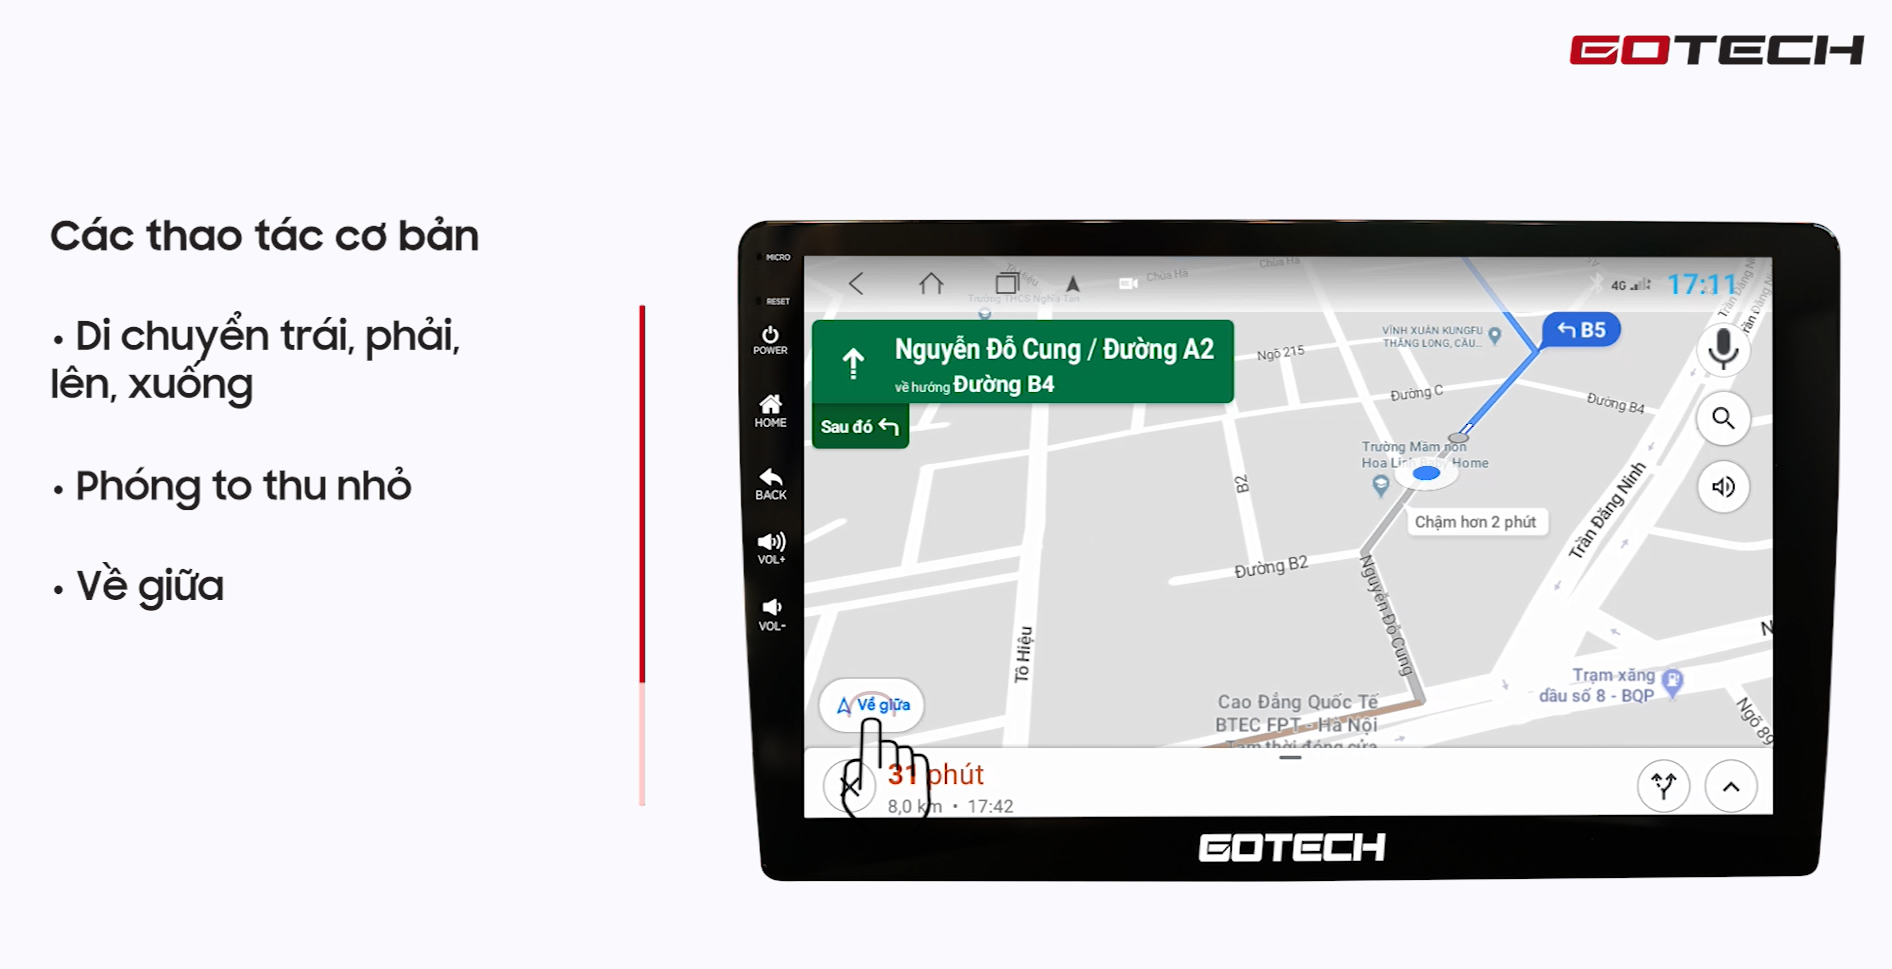 Hướng dẫn sử dụng Google Maps trên màn hình Gotech